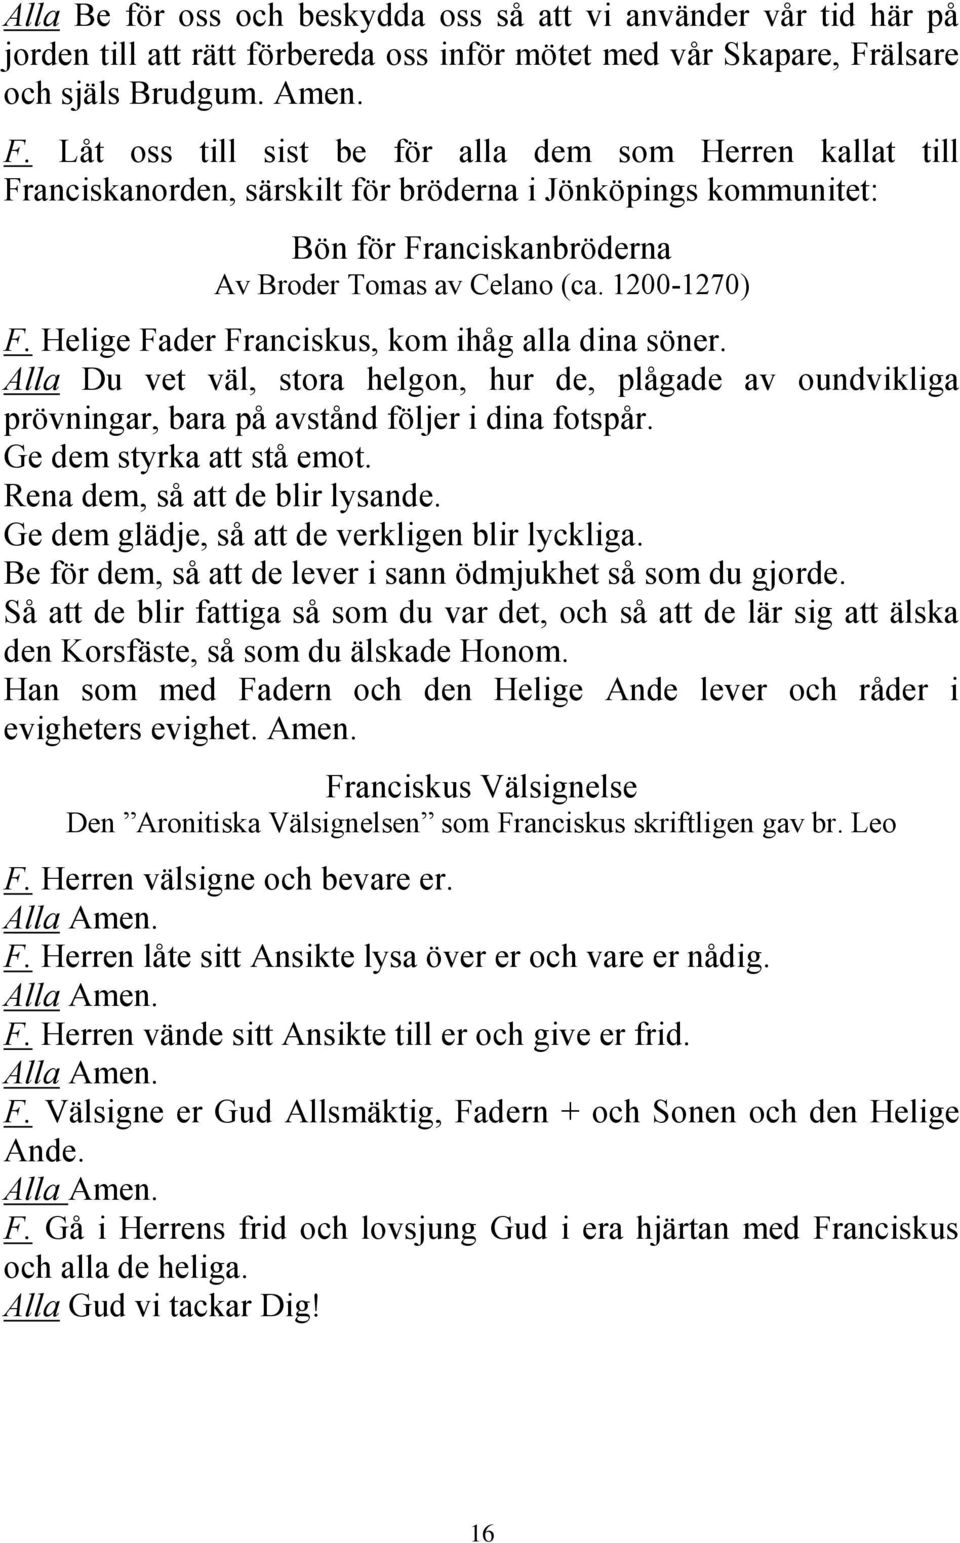 Låt oss till sist be för alla dem som Herren kallat till Franciskanorden, särskilt för bröderna i Jönköpings kommunitet: Bön för Franciskanbröderna Av Broder Tomas av Celano (ca. 1200-1270) F.